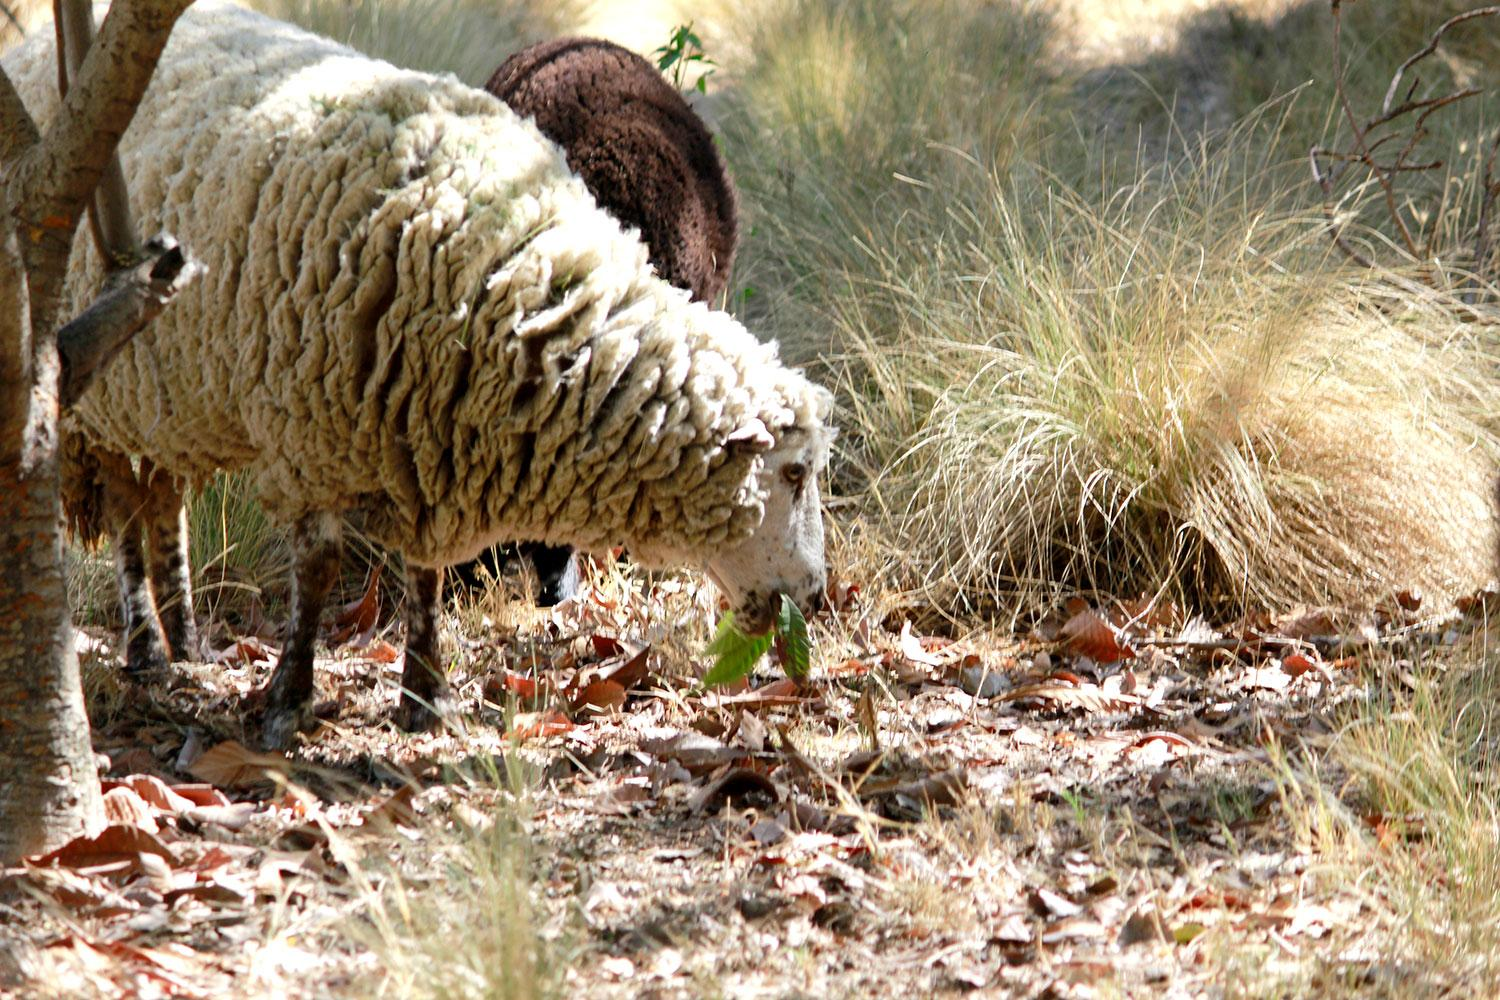 Ovejas y cabras son entrenadas para combatir los incendios forestales mediante el pastoreo (+fotos)